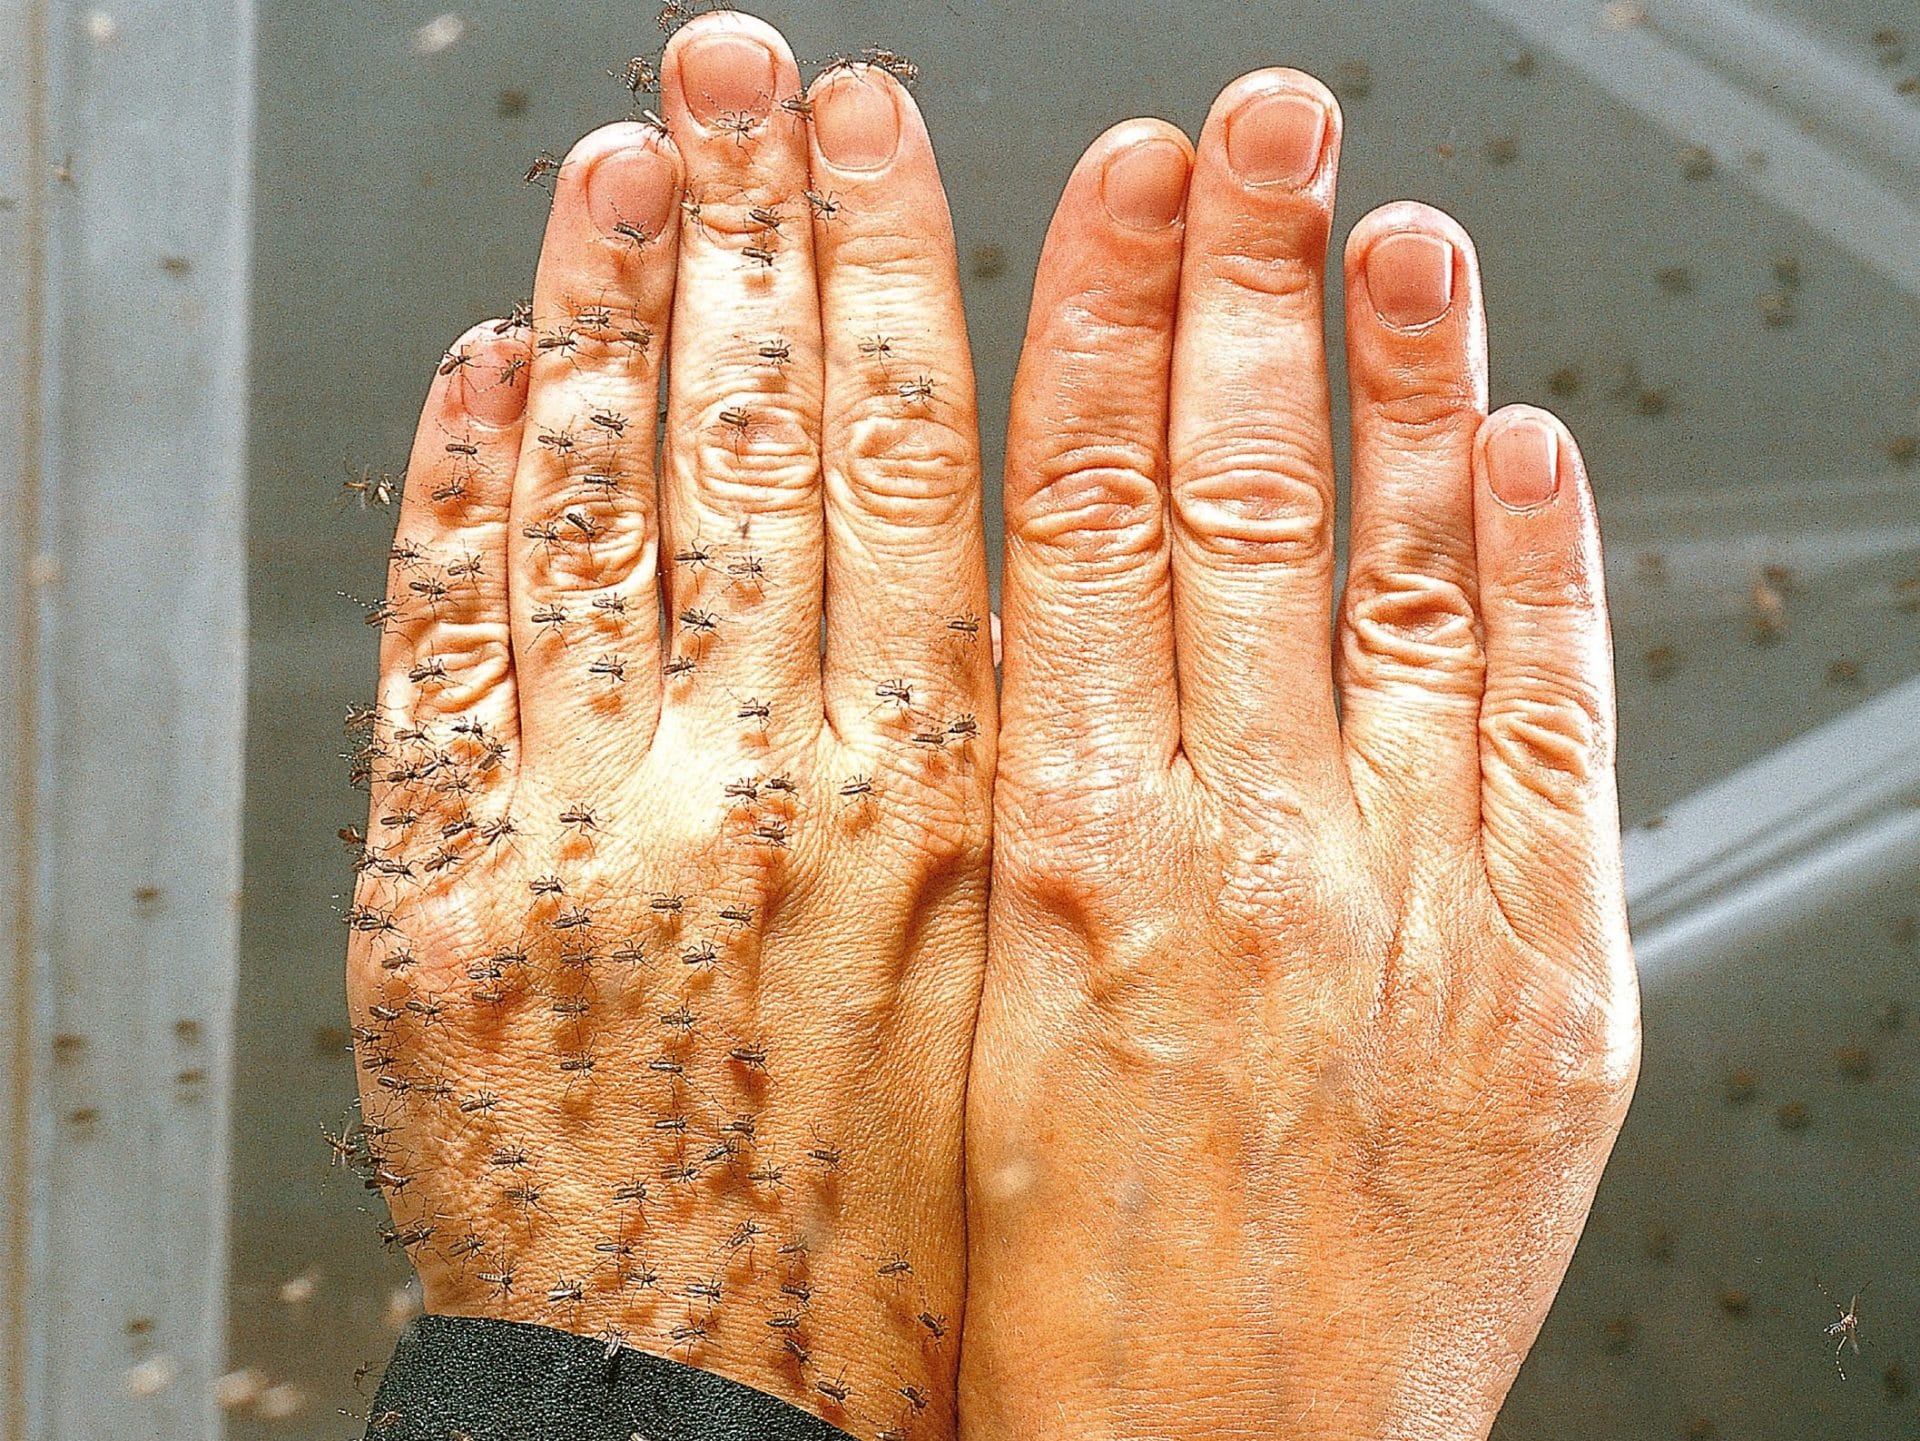 Vorsorge hilft: Die rechte Hand wurde mit einem wirksamen Mittel gegen Insektenstiche geschützt, die linke nicht. Foto: djd/Lanxess